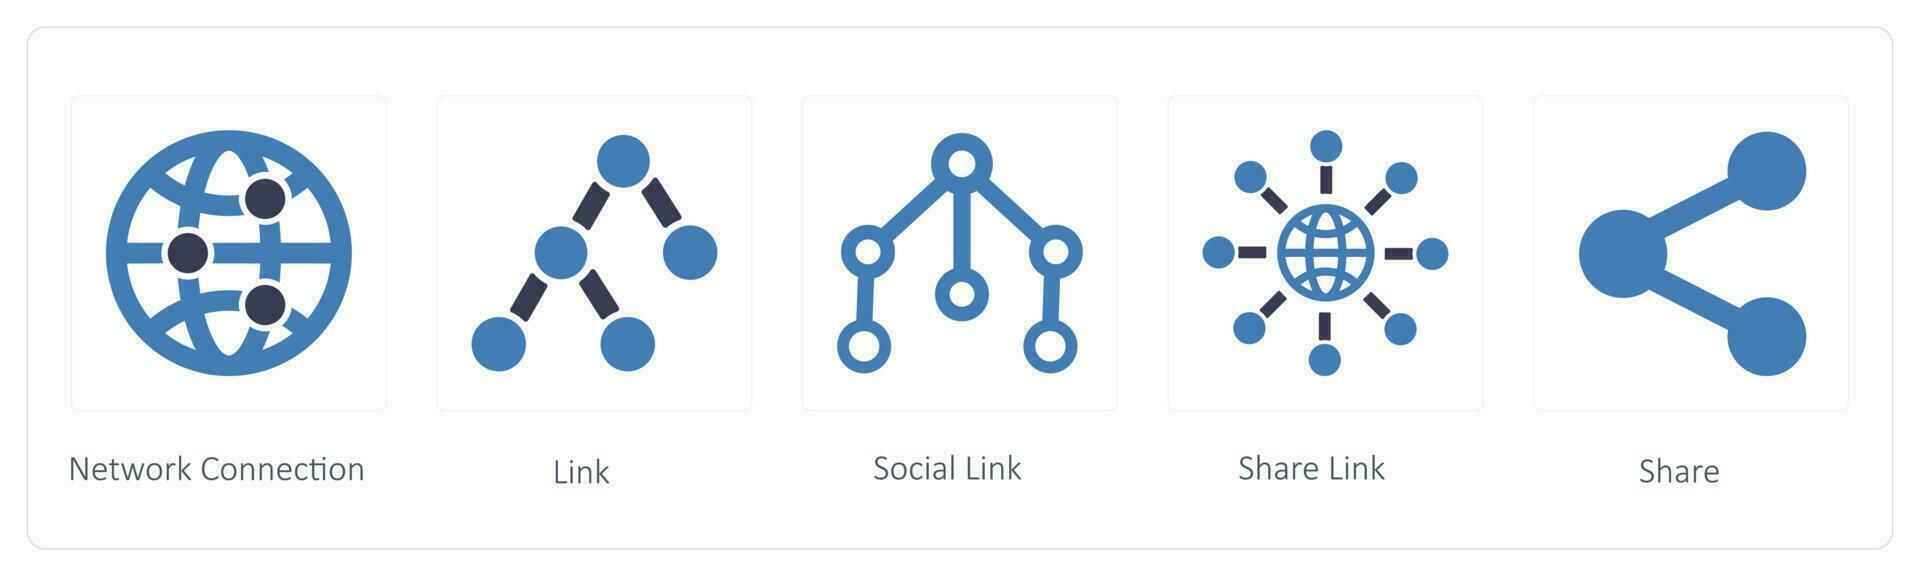 attività commerciale icone come come Rete connessione, collegamento e sociale collegamento vettore